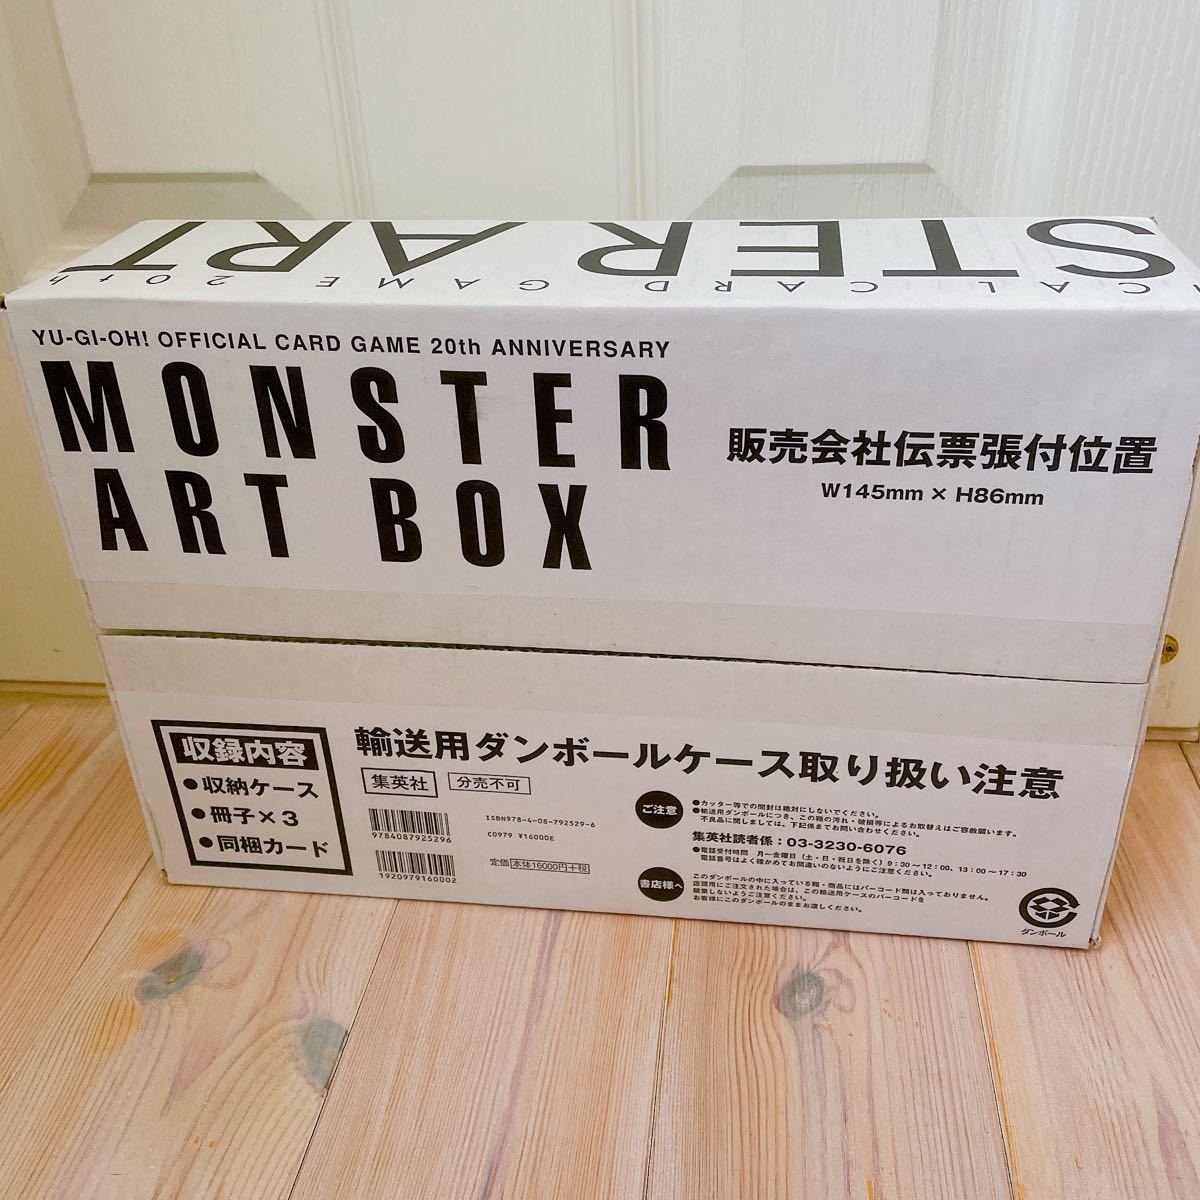 新品 YU-GI-OH! OCG 20th ANNIVERSARY MONSTER ART BOX (愛蔵版